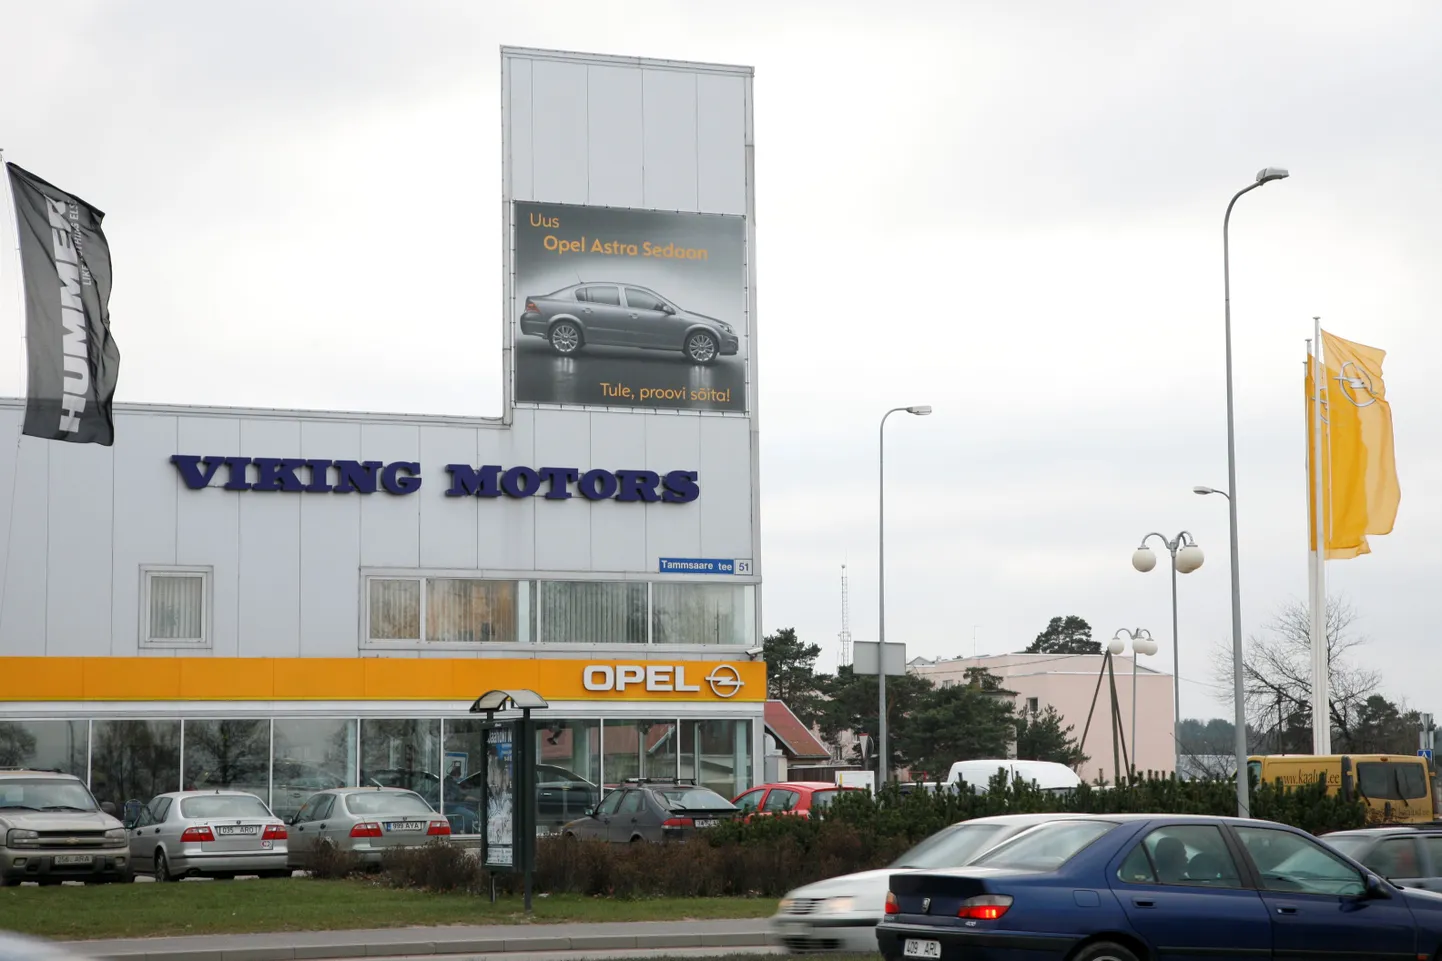 Viking Motors